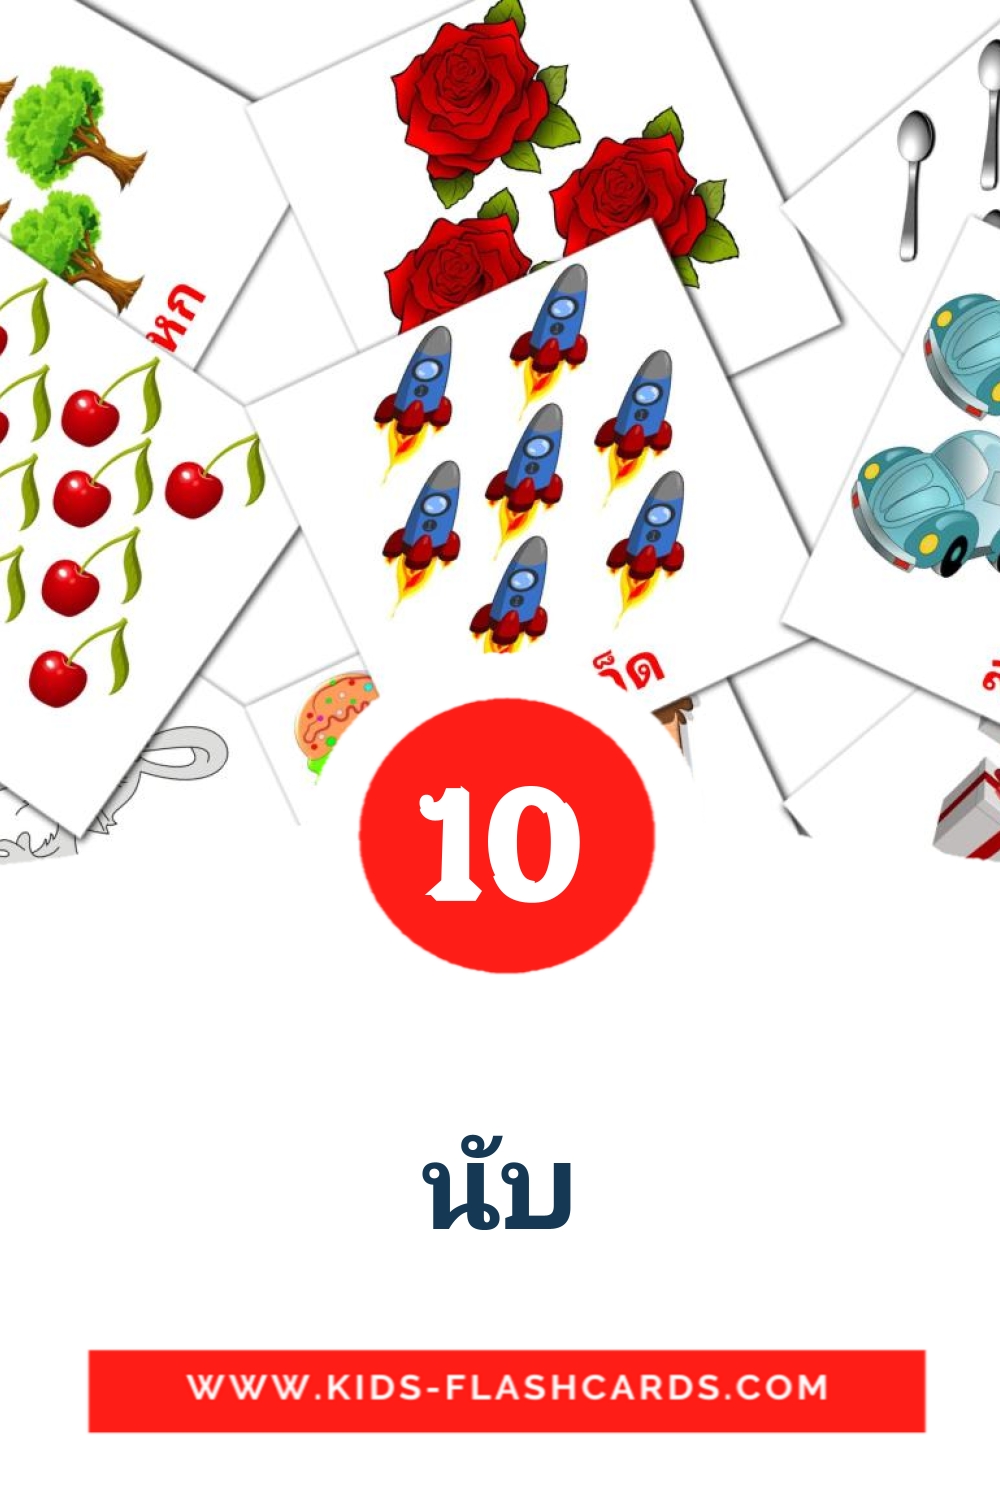 10 tarjetas didacticas de นับ para el jardín de infancia en tailandés